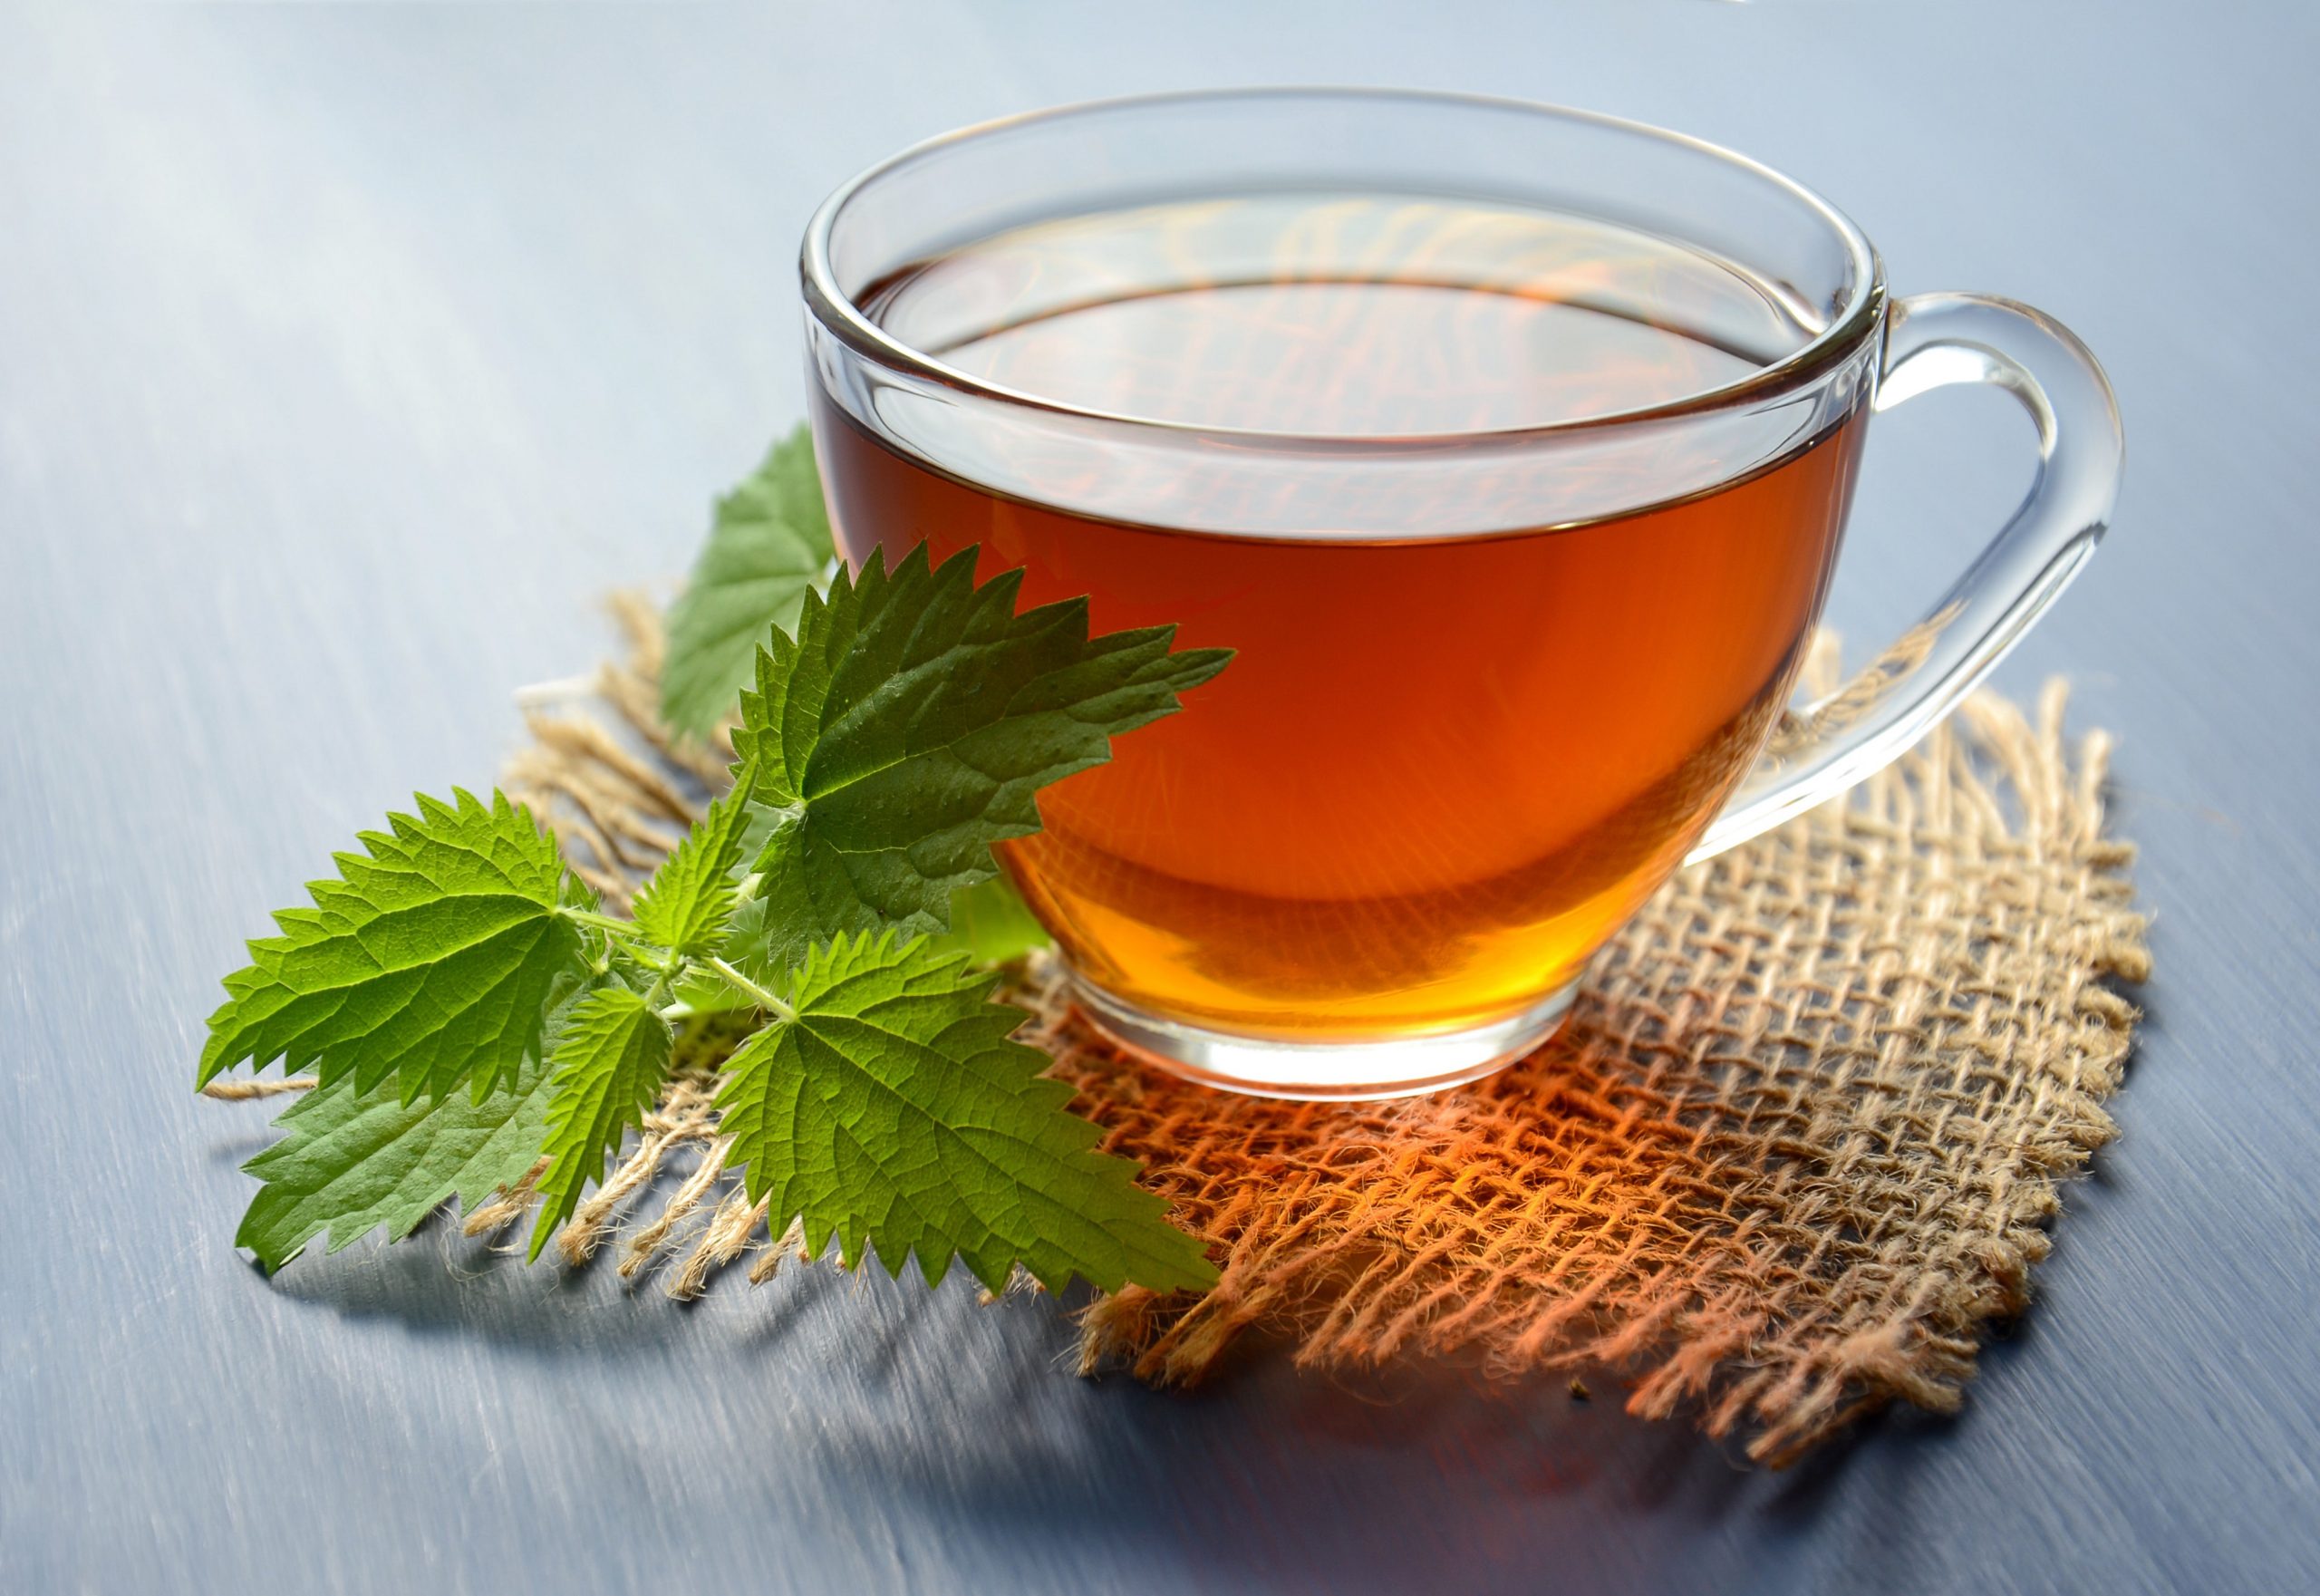 Is Decaf Tea A Diuretic?